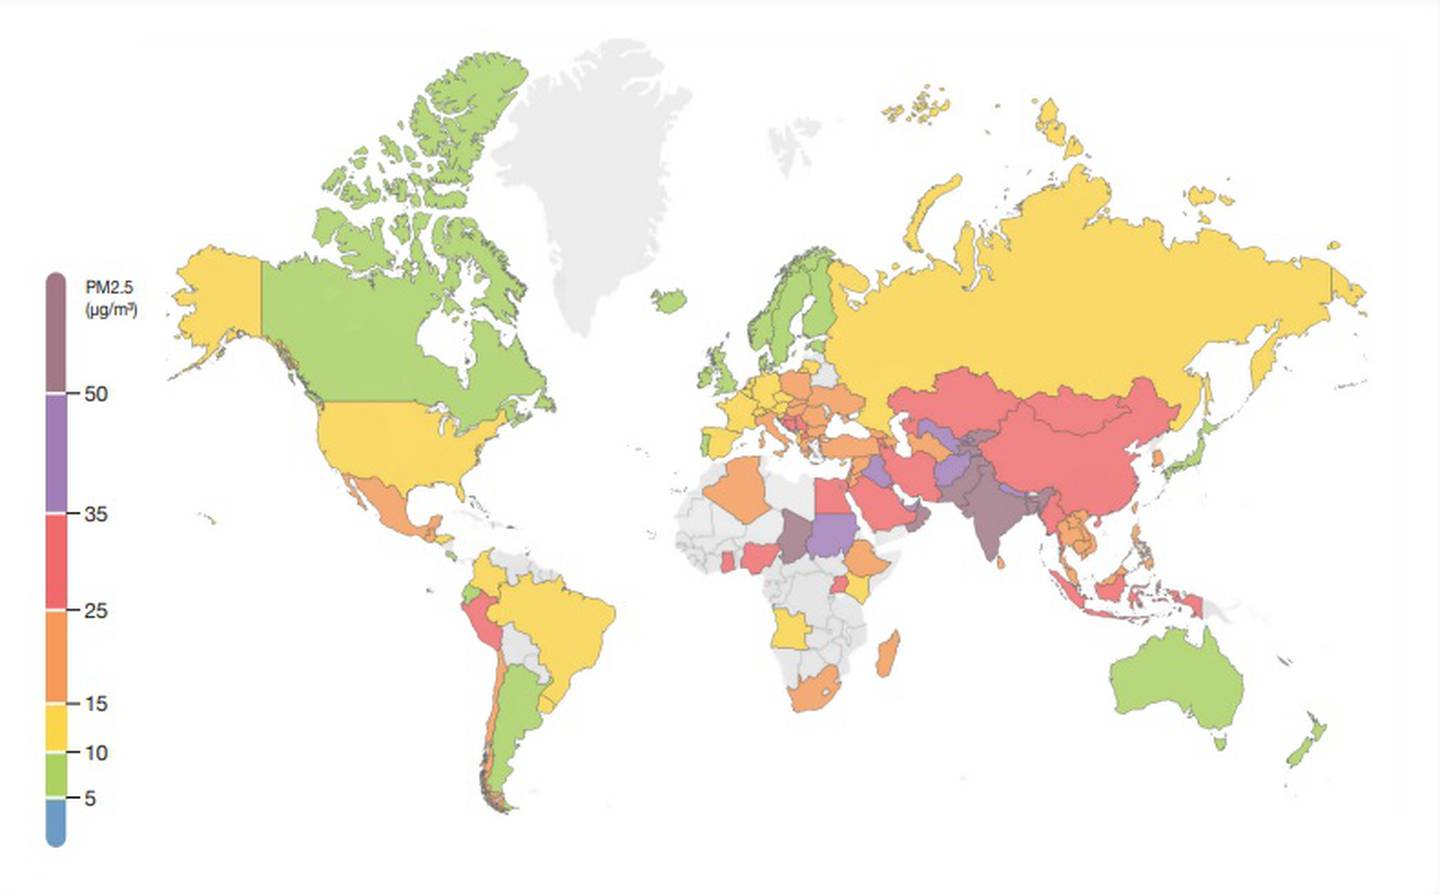 Codificado por colores según la concentración promedio anual de PM2.5dfd